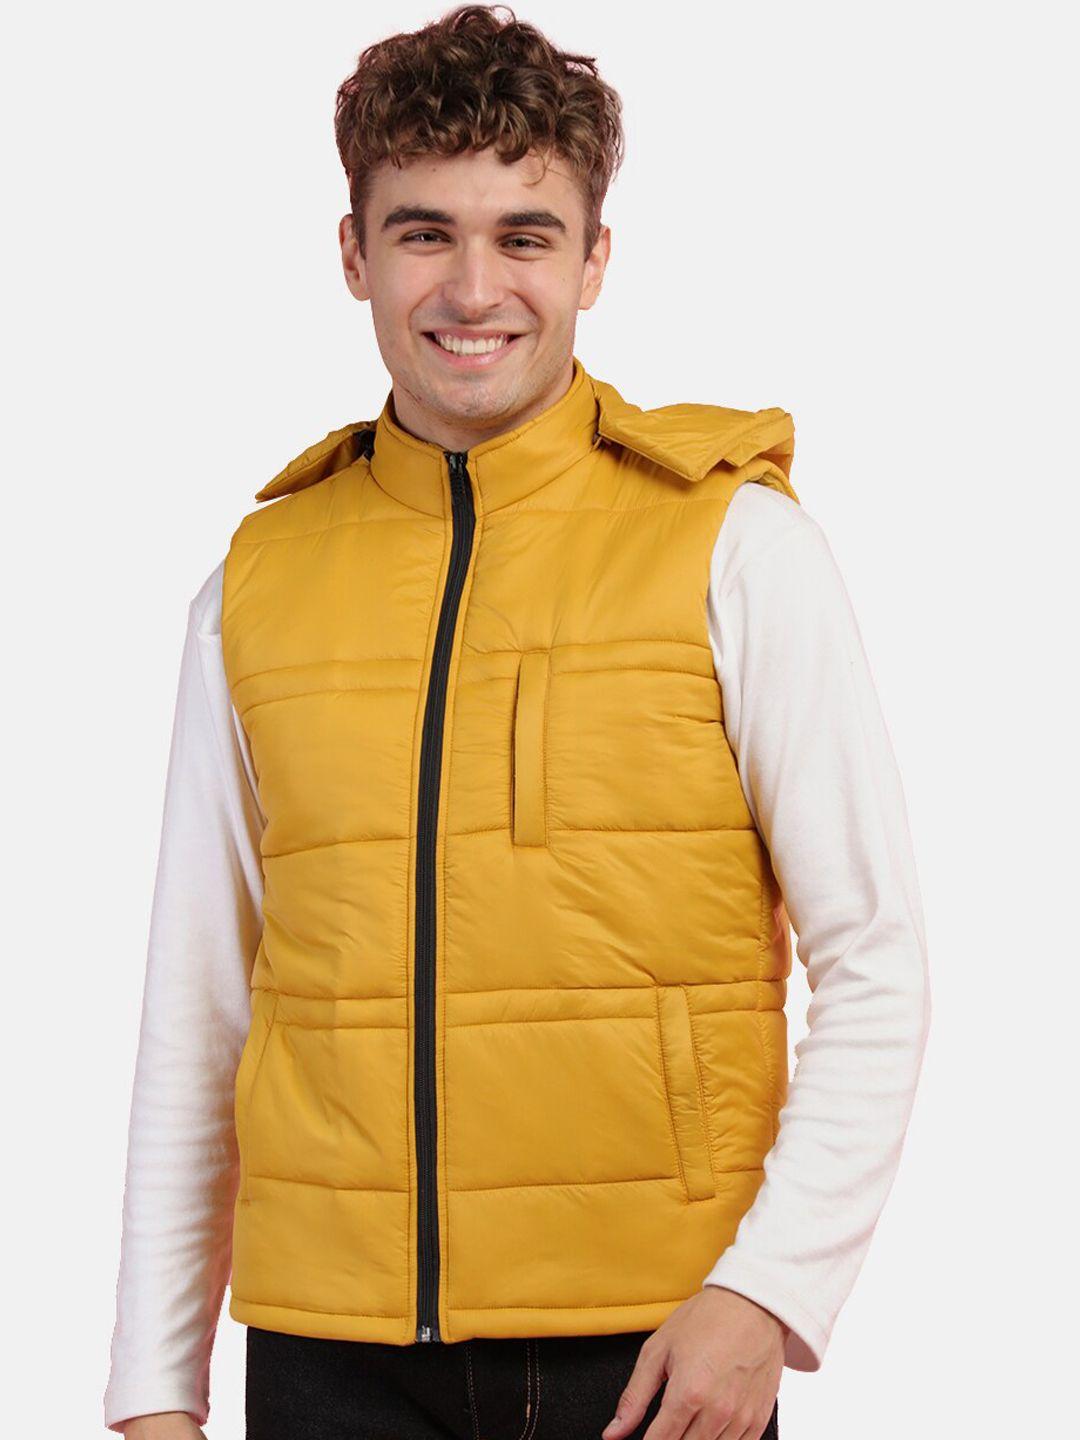 chkokko men mustard outdoor padded jacket